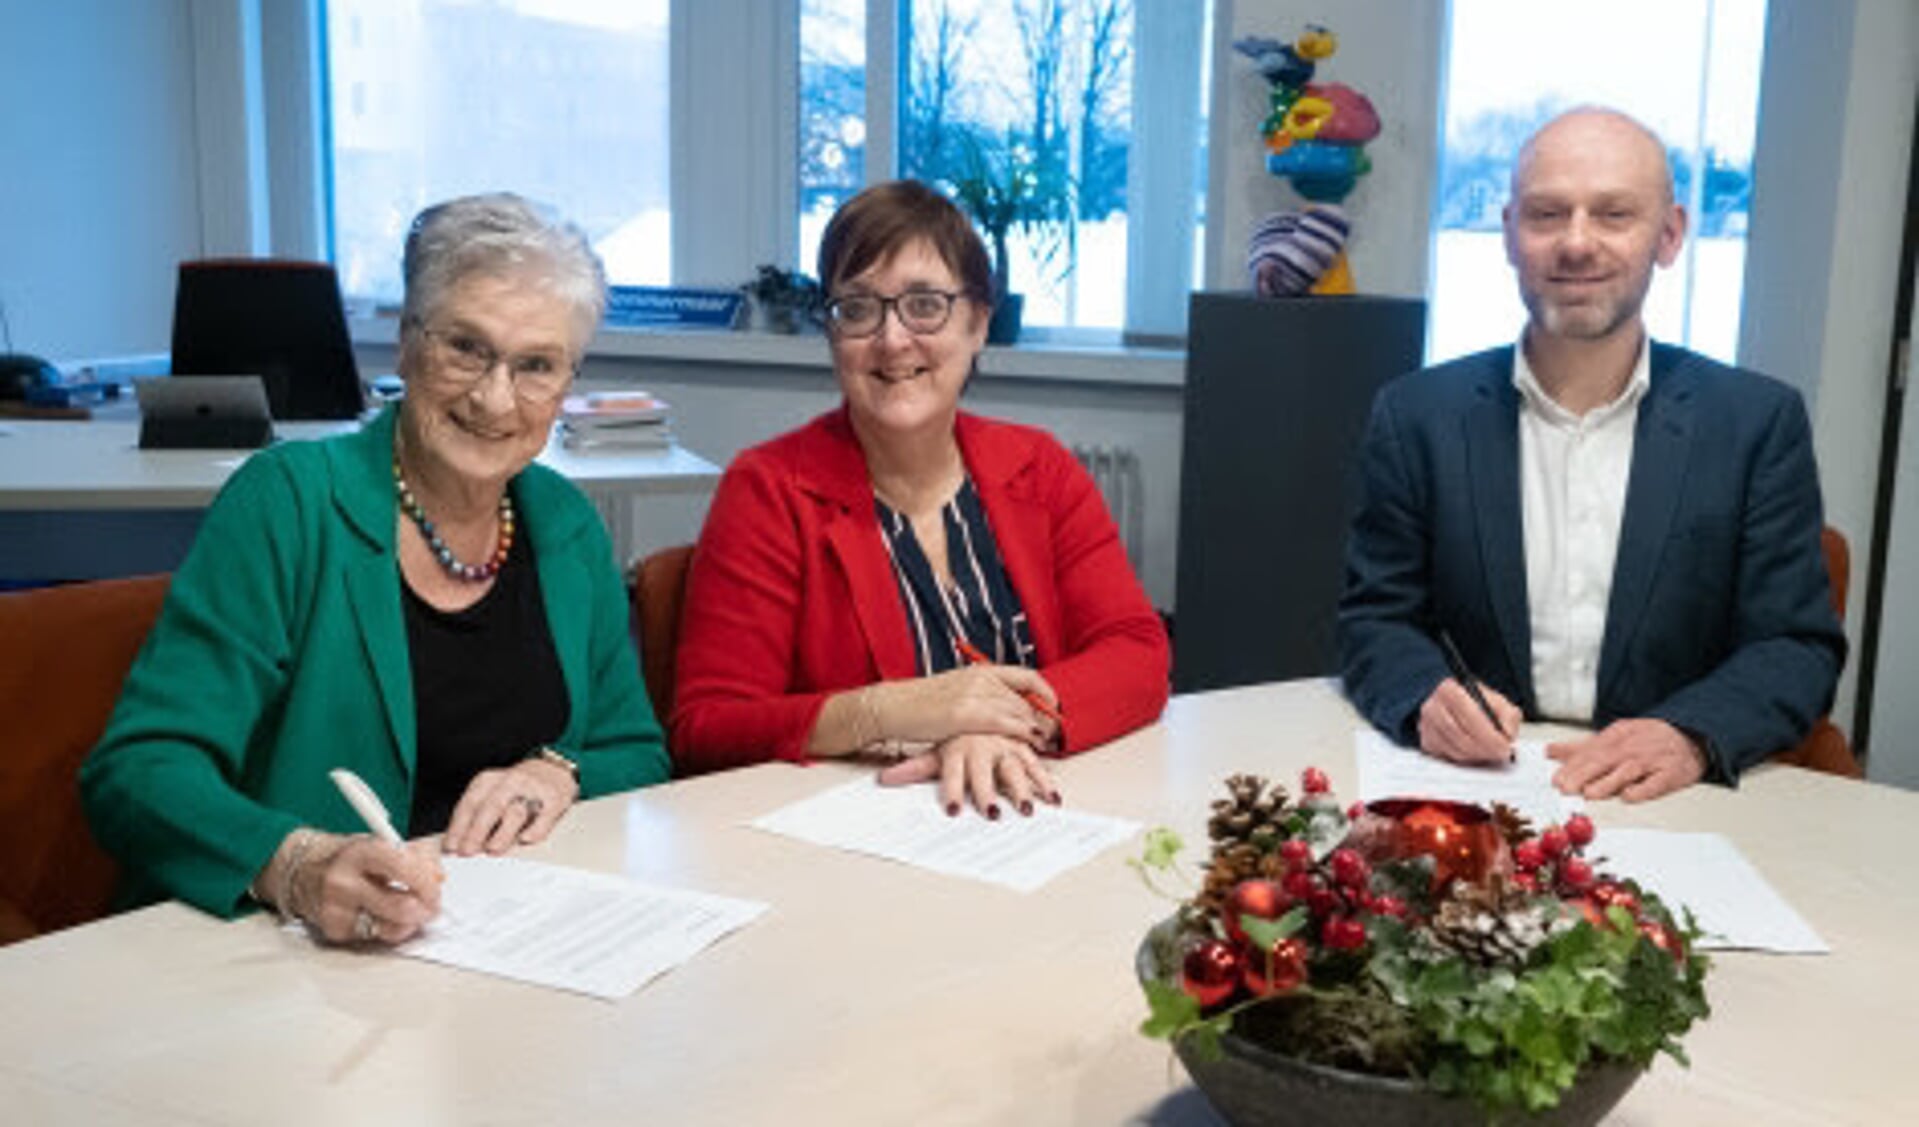 Van links af: Bea van Doorn (Alert), wethouder Mieke Booij (gemeente) en Danny Wijnbelt (Eigen Haard)